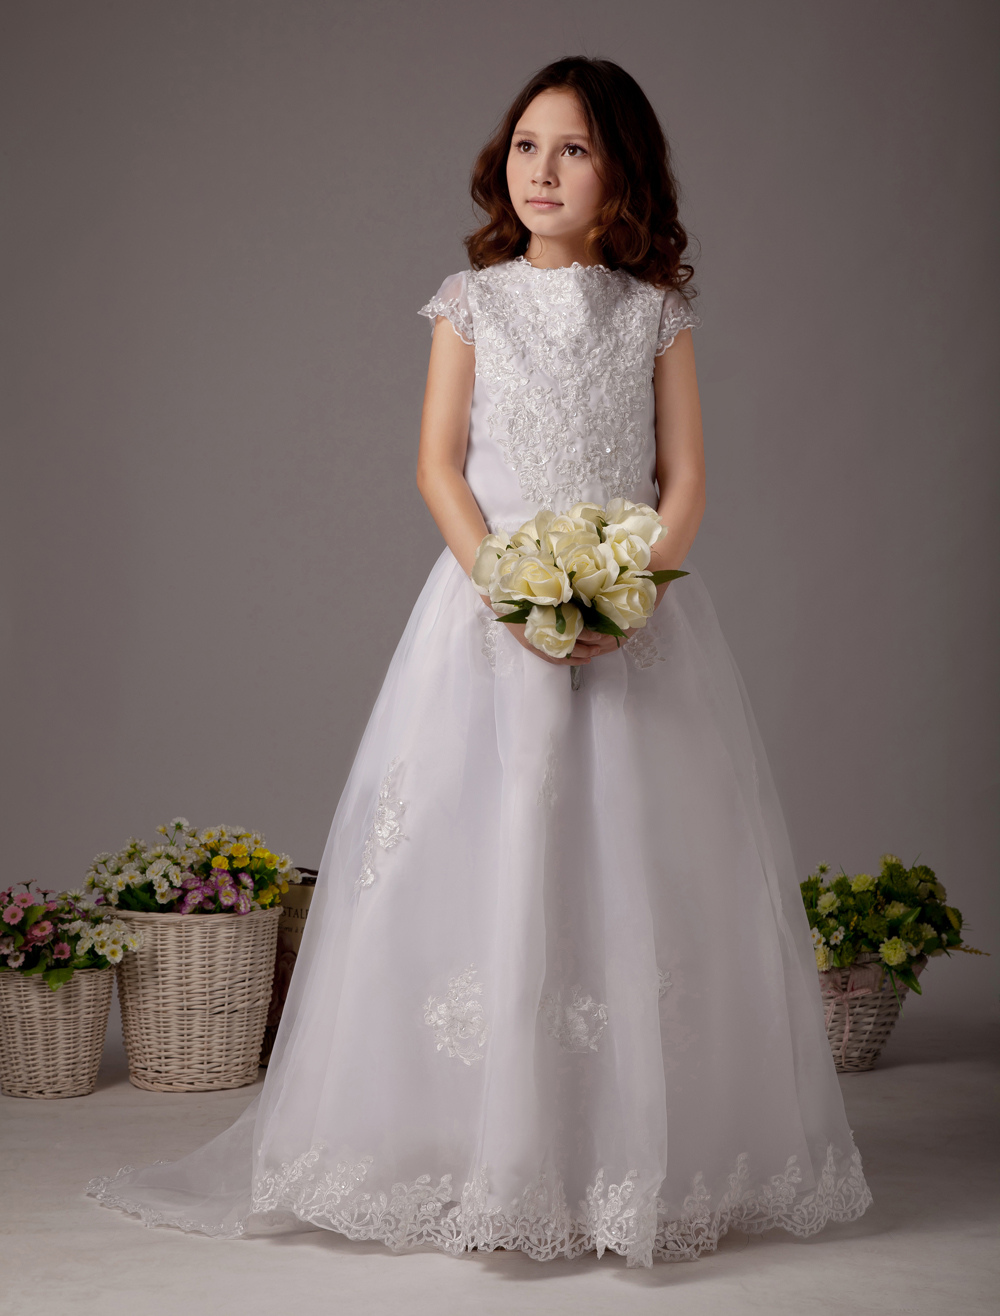 White High Collar Ball Gown Satin Lovely Flower Girl Dress - Milanoo.com